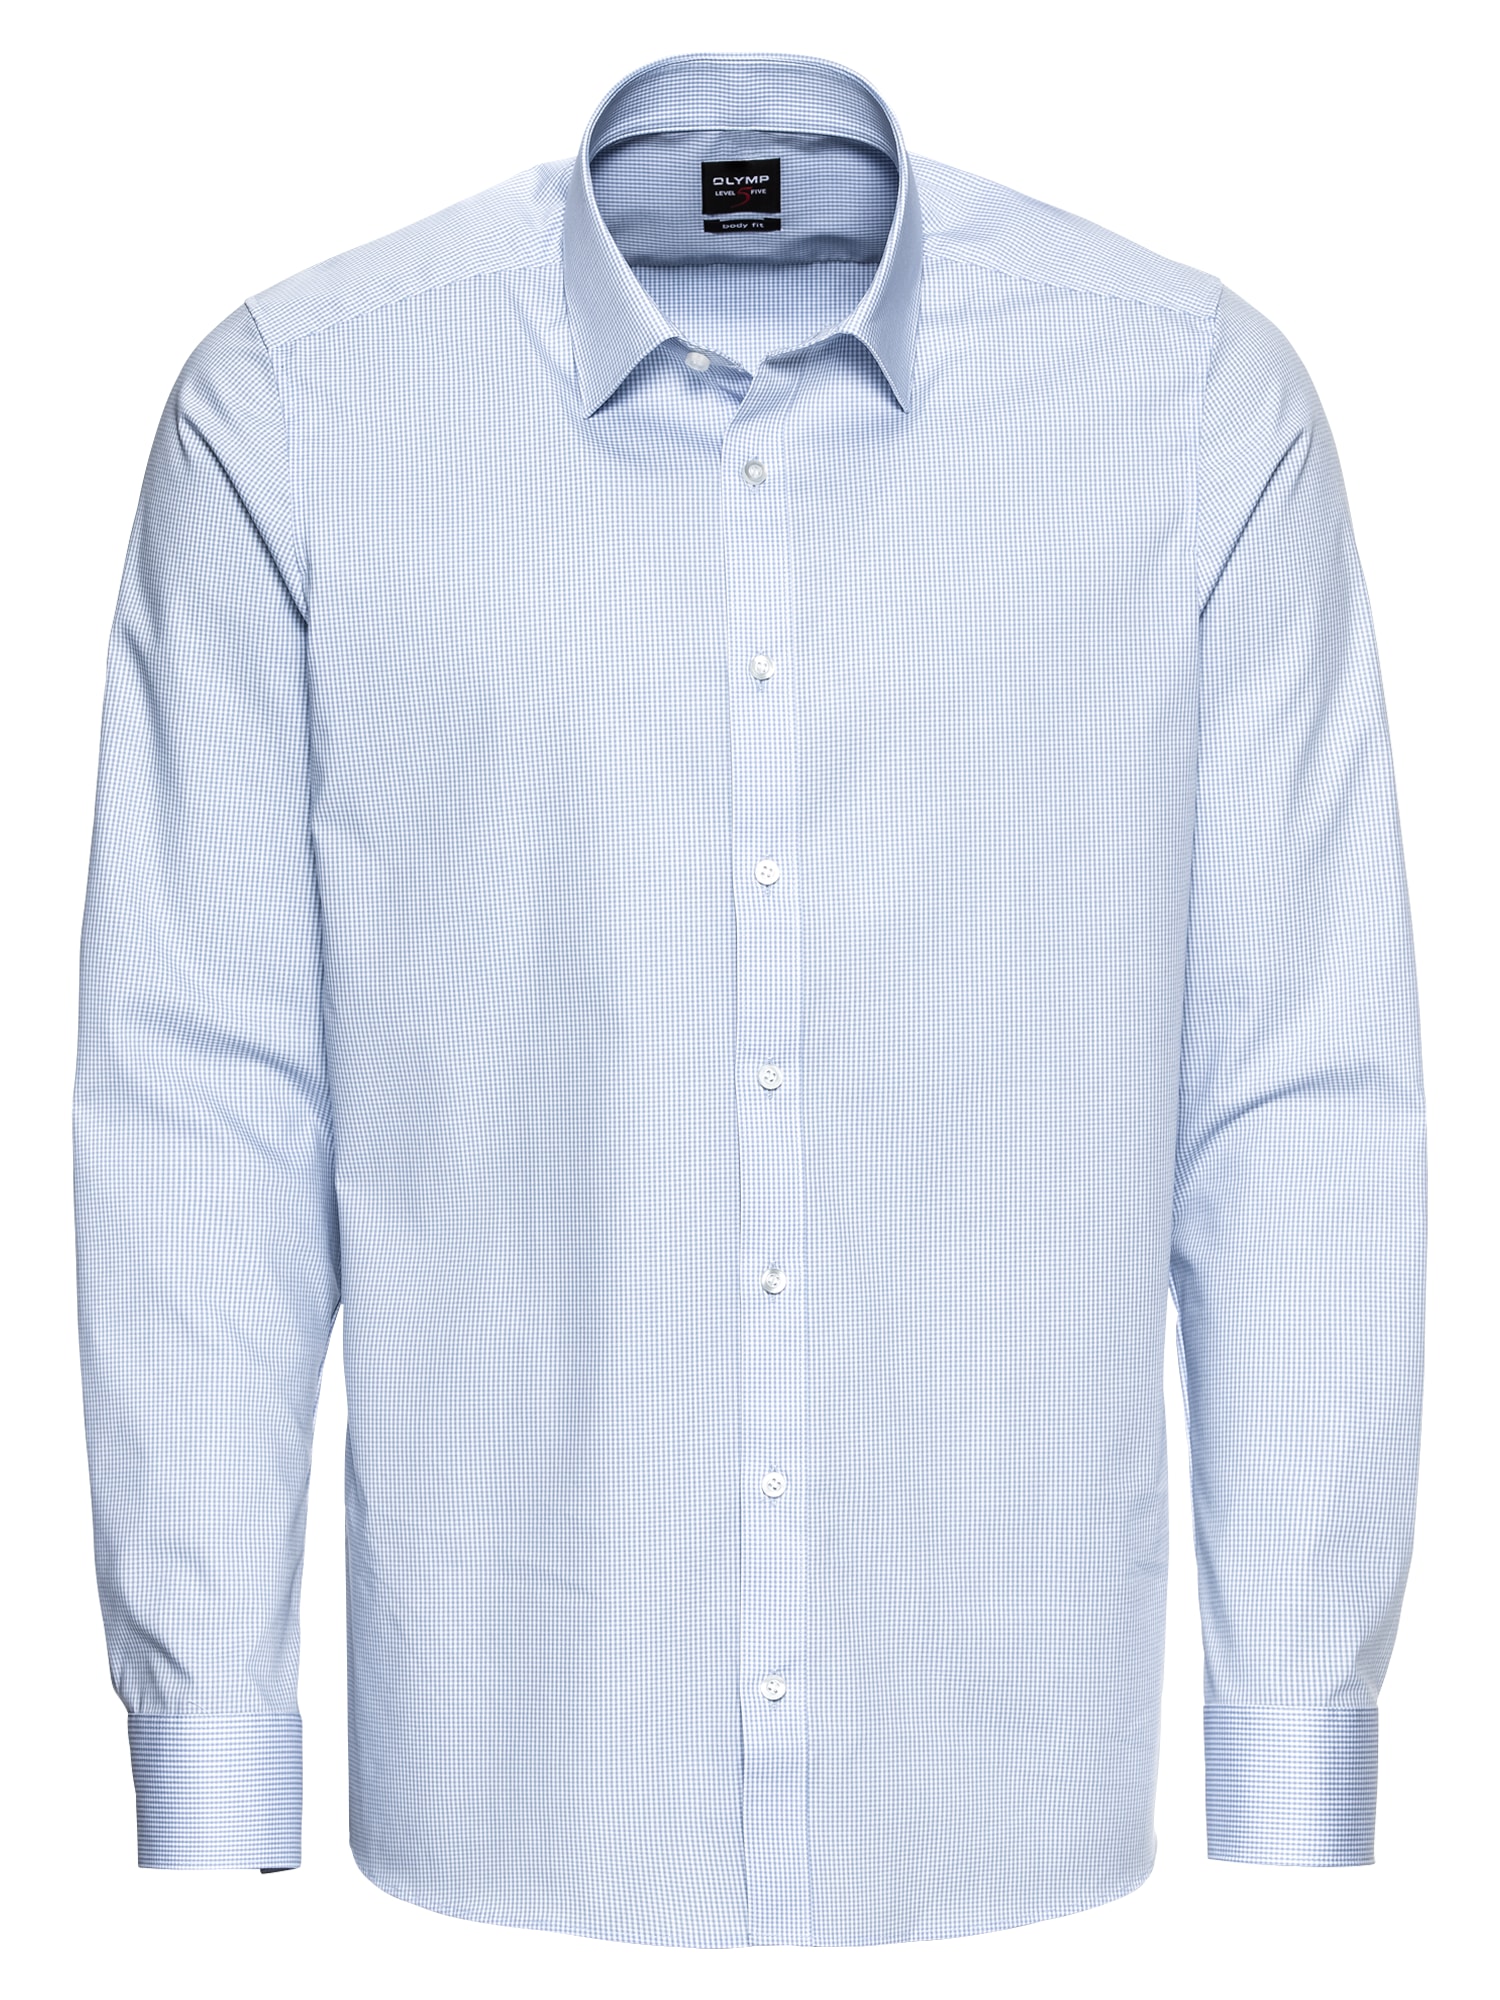 OLYMP Dalykinio stiliaus marškiniai balta / šviesiai mėlyna